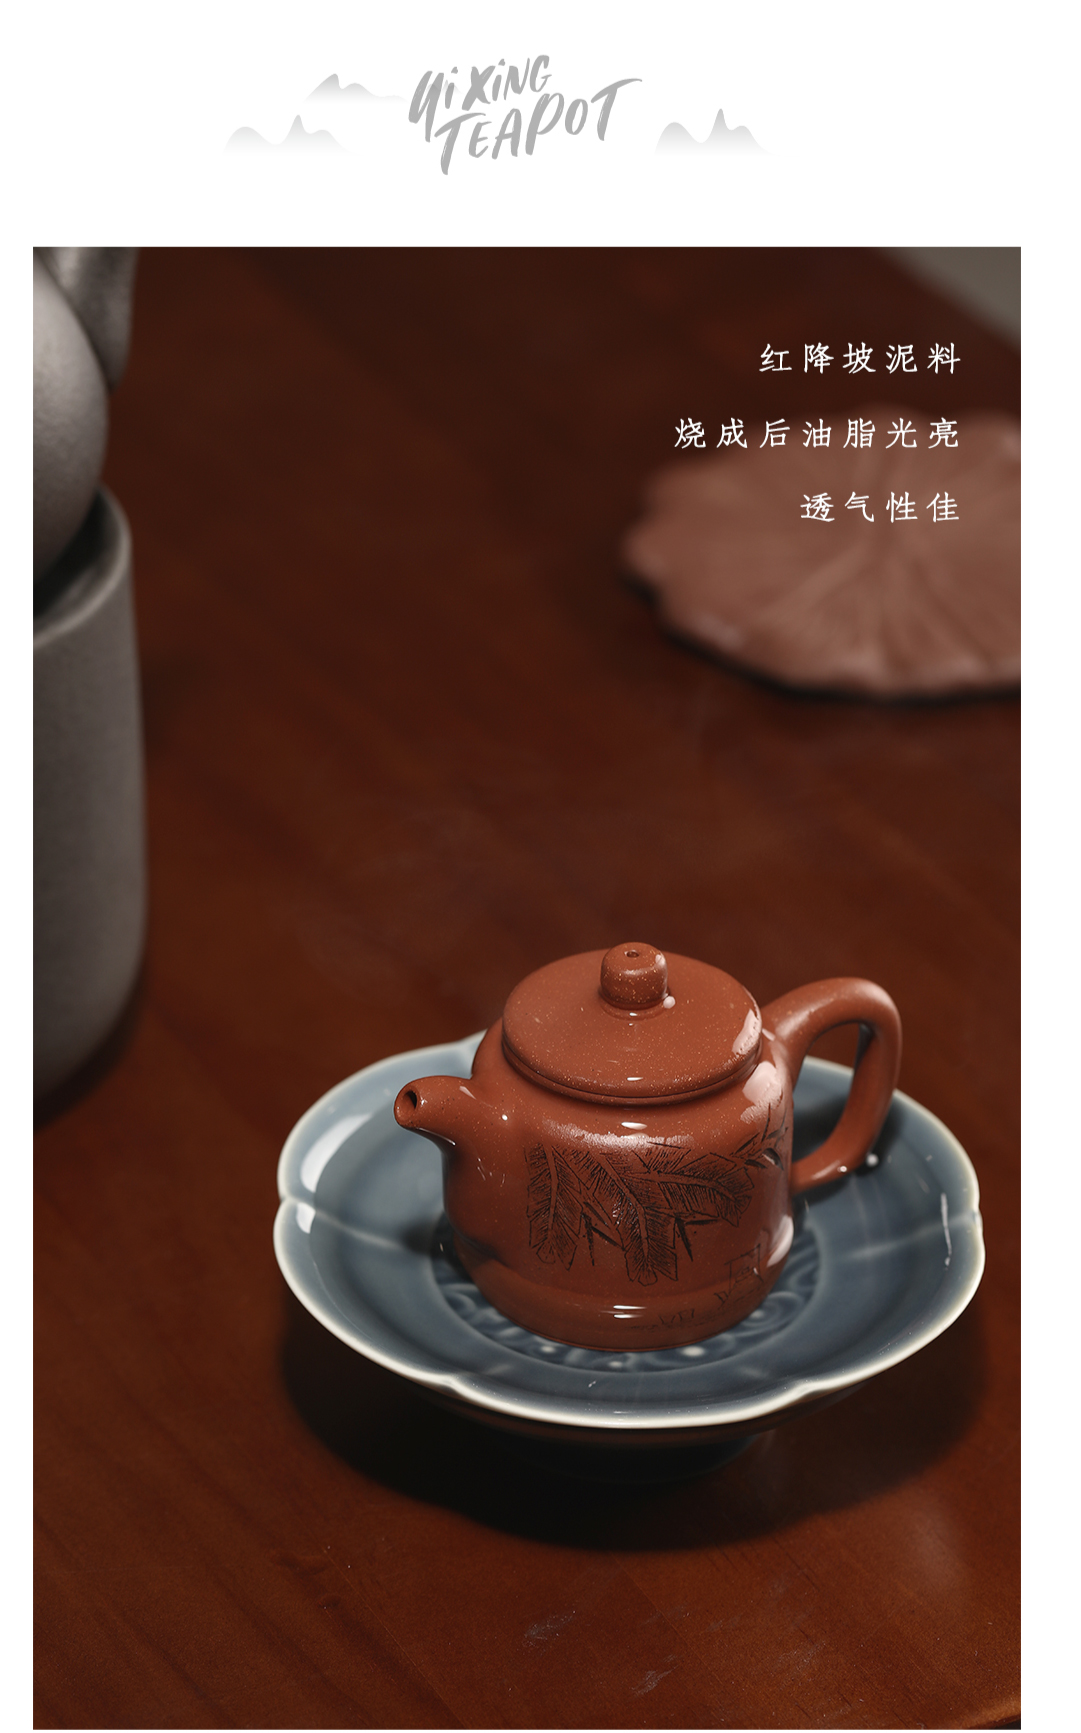 禅茶-详情页6.jpg